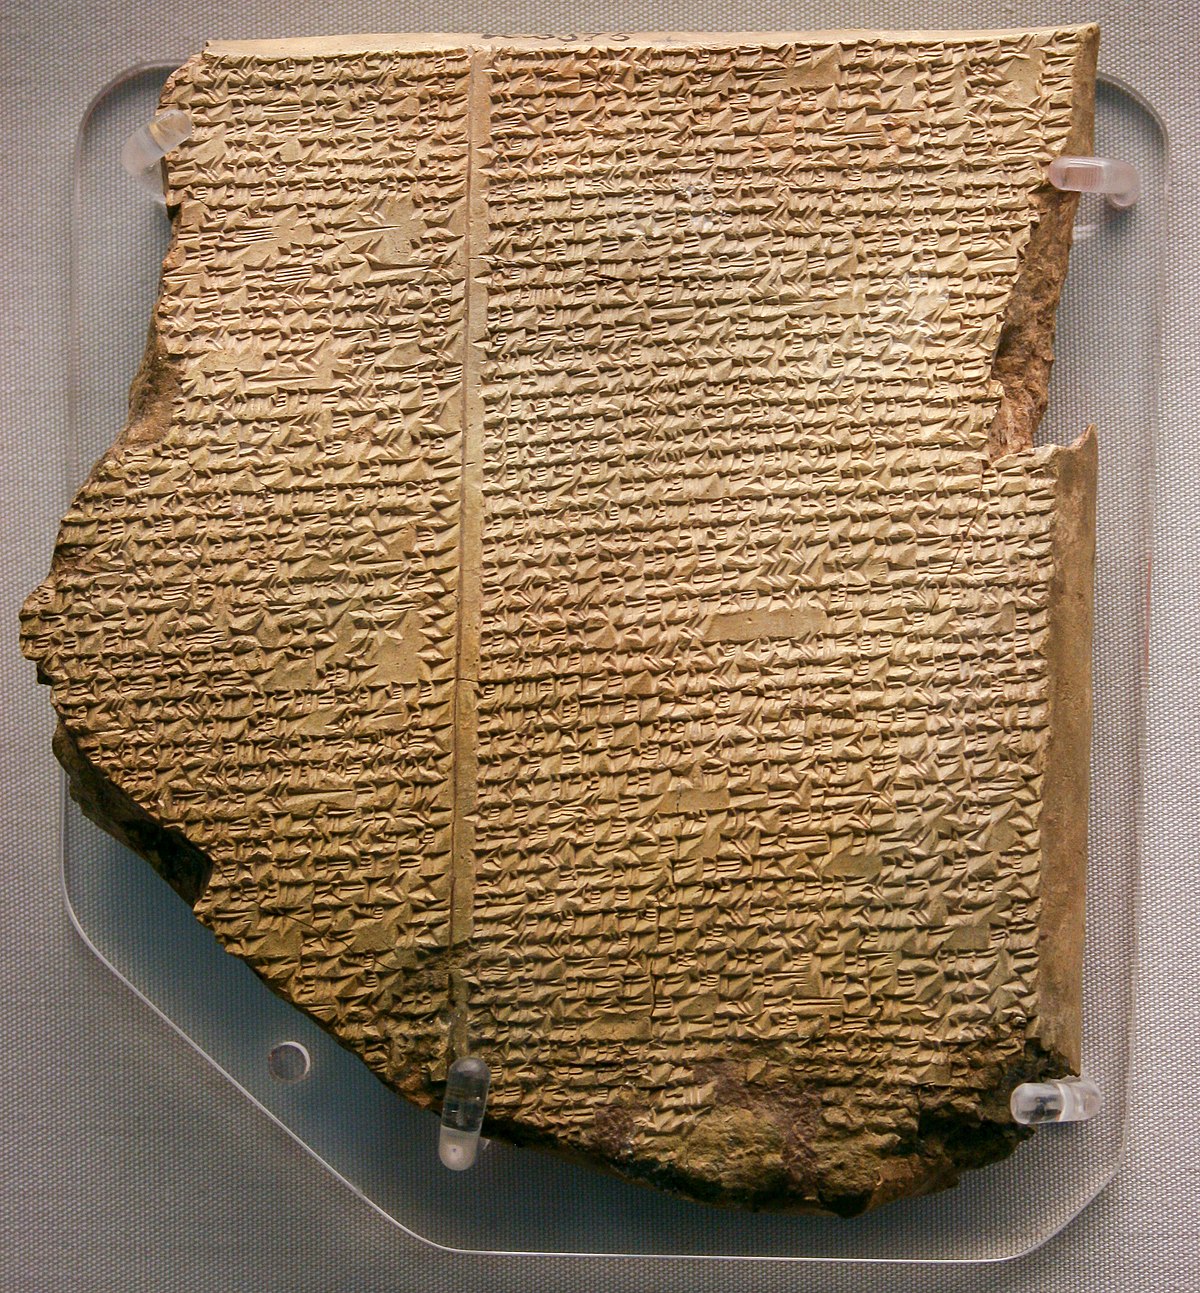 Gilgamesh flood myth - Wikipedia